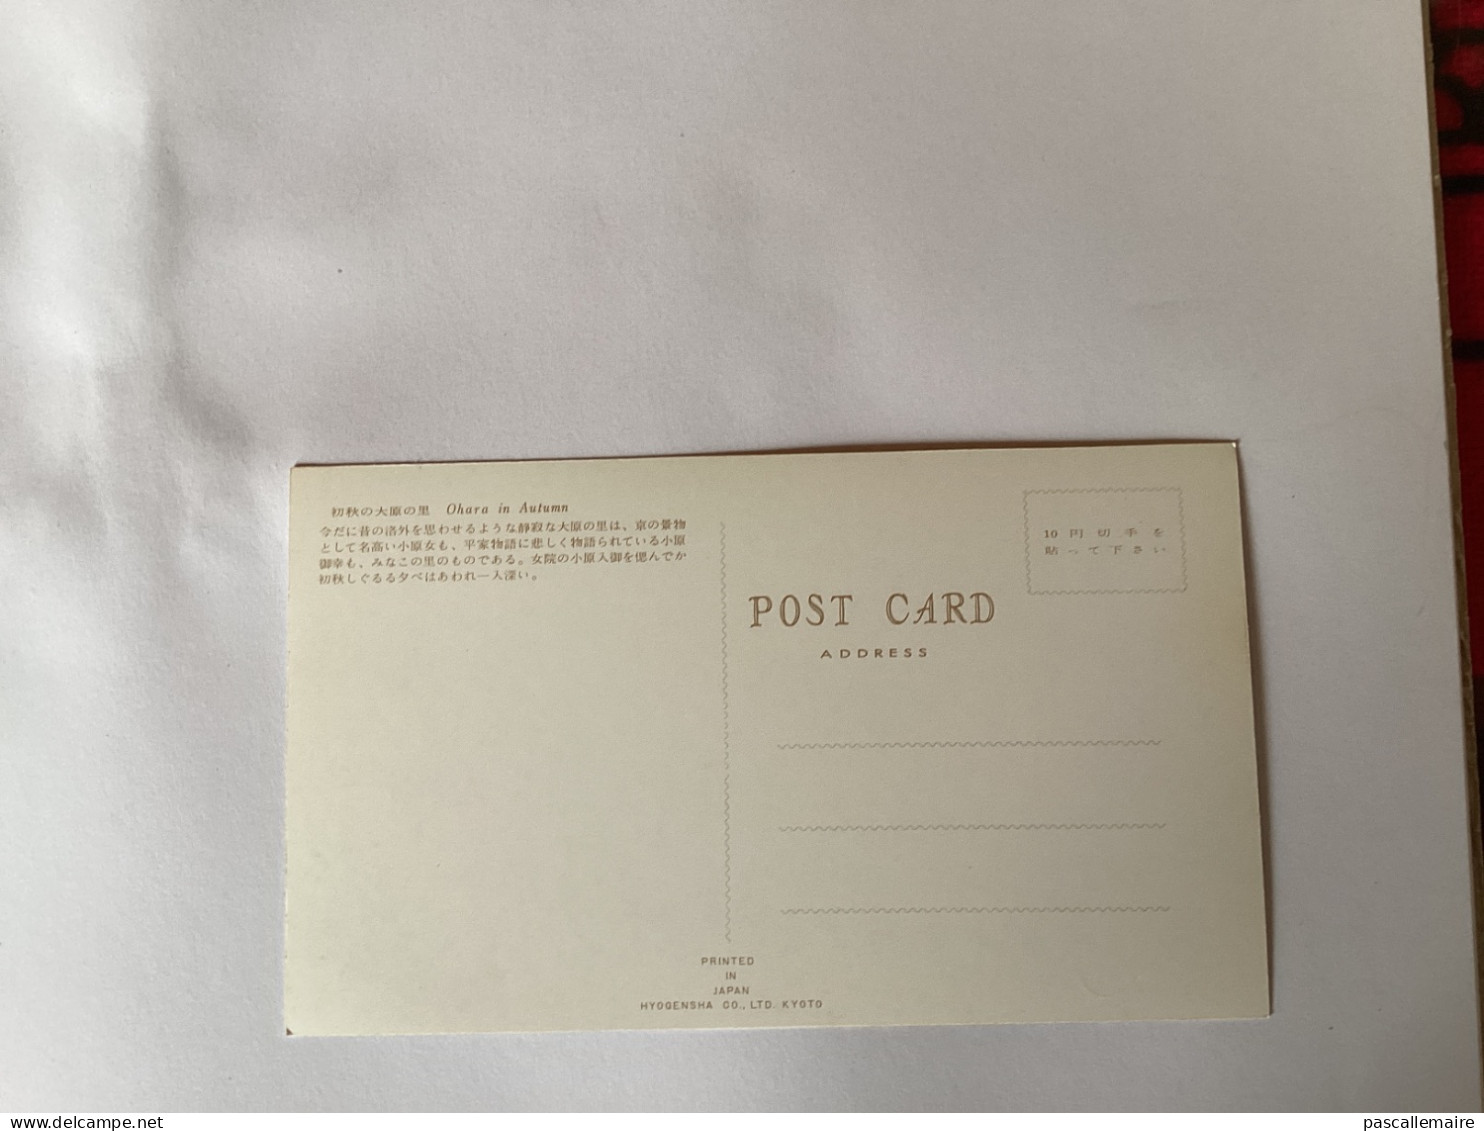 8 cartes postales kyoto année 1960